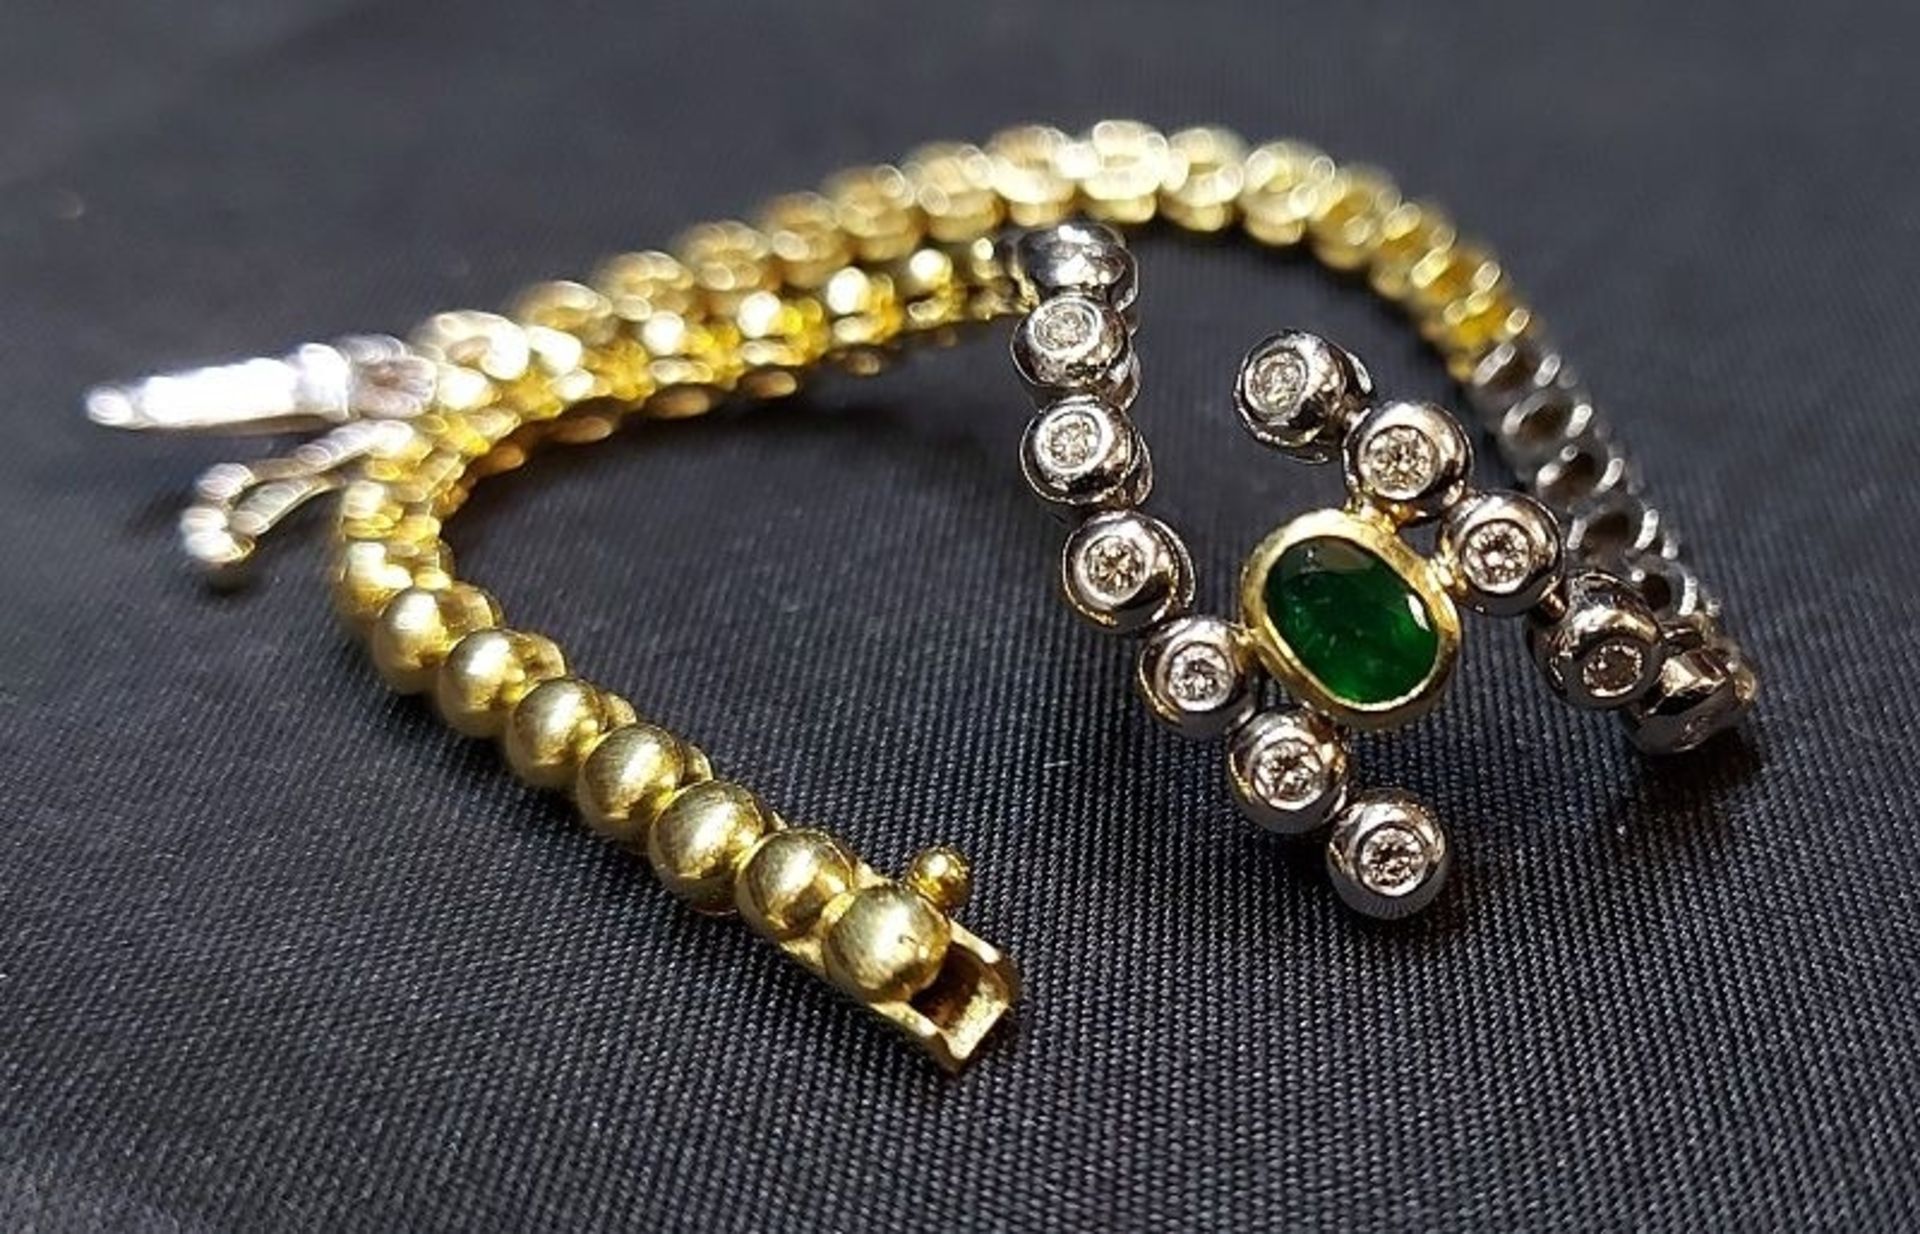 Luxus Pur! 750 GG Armband mit Smaragd & Brillanten